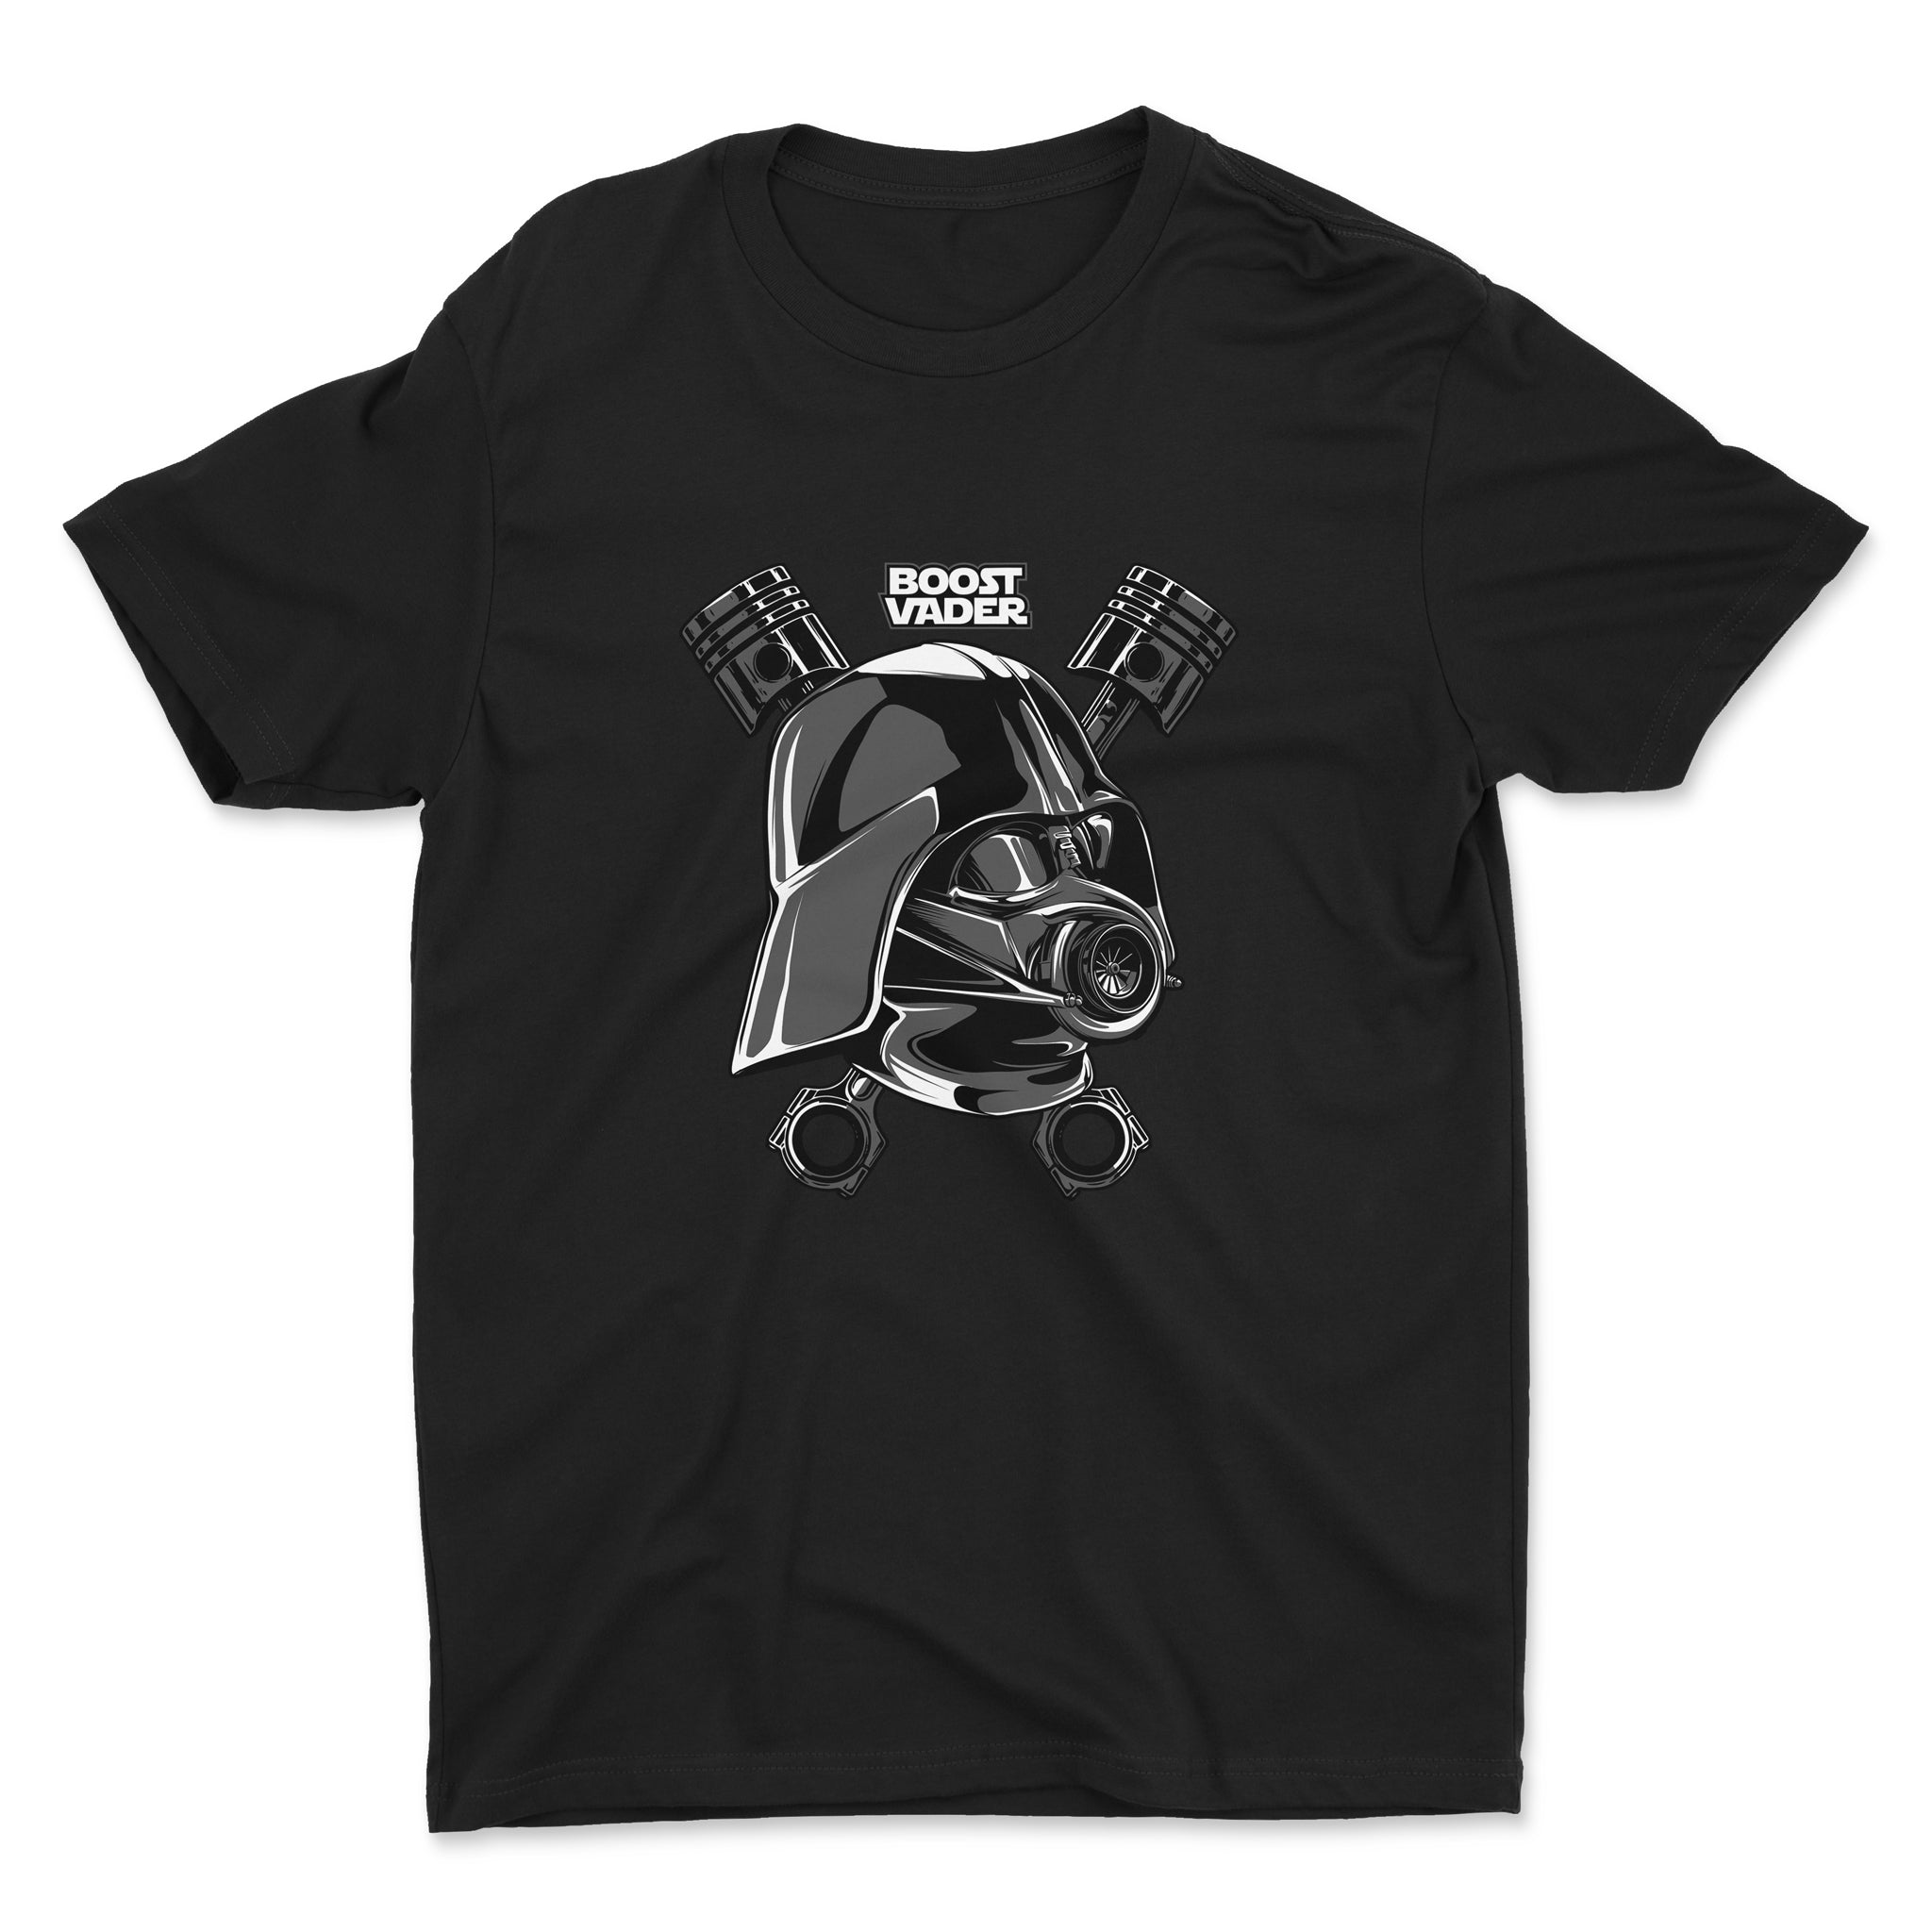 Boost Vader - Darth Vader and Turbo - Car T-Shirt Black.